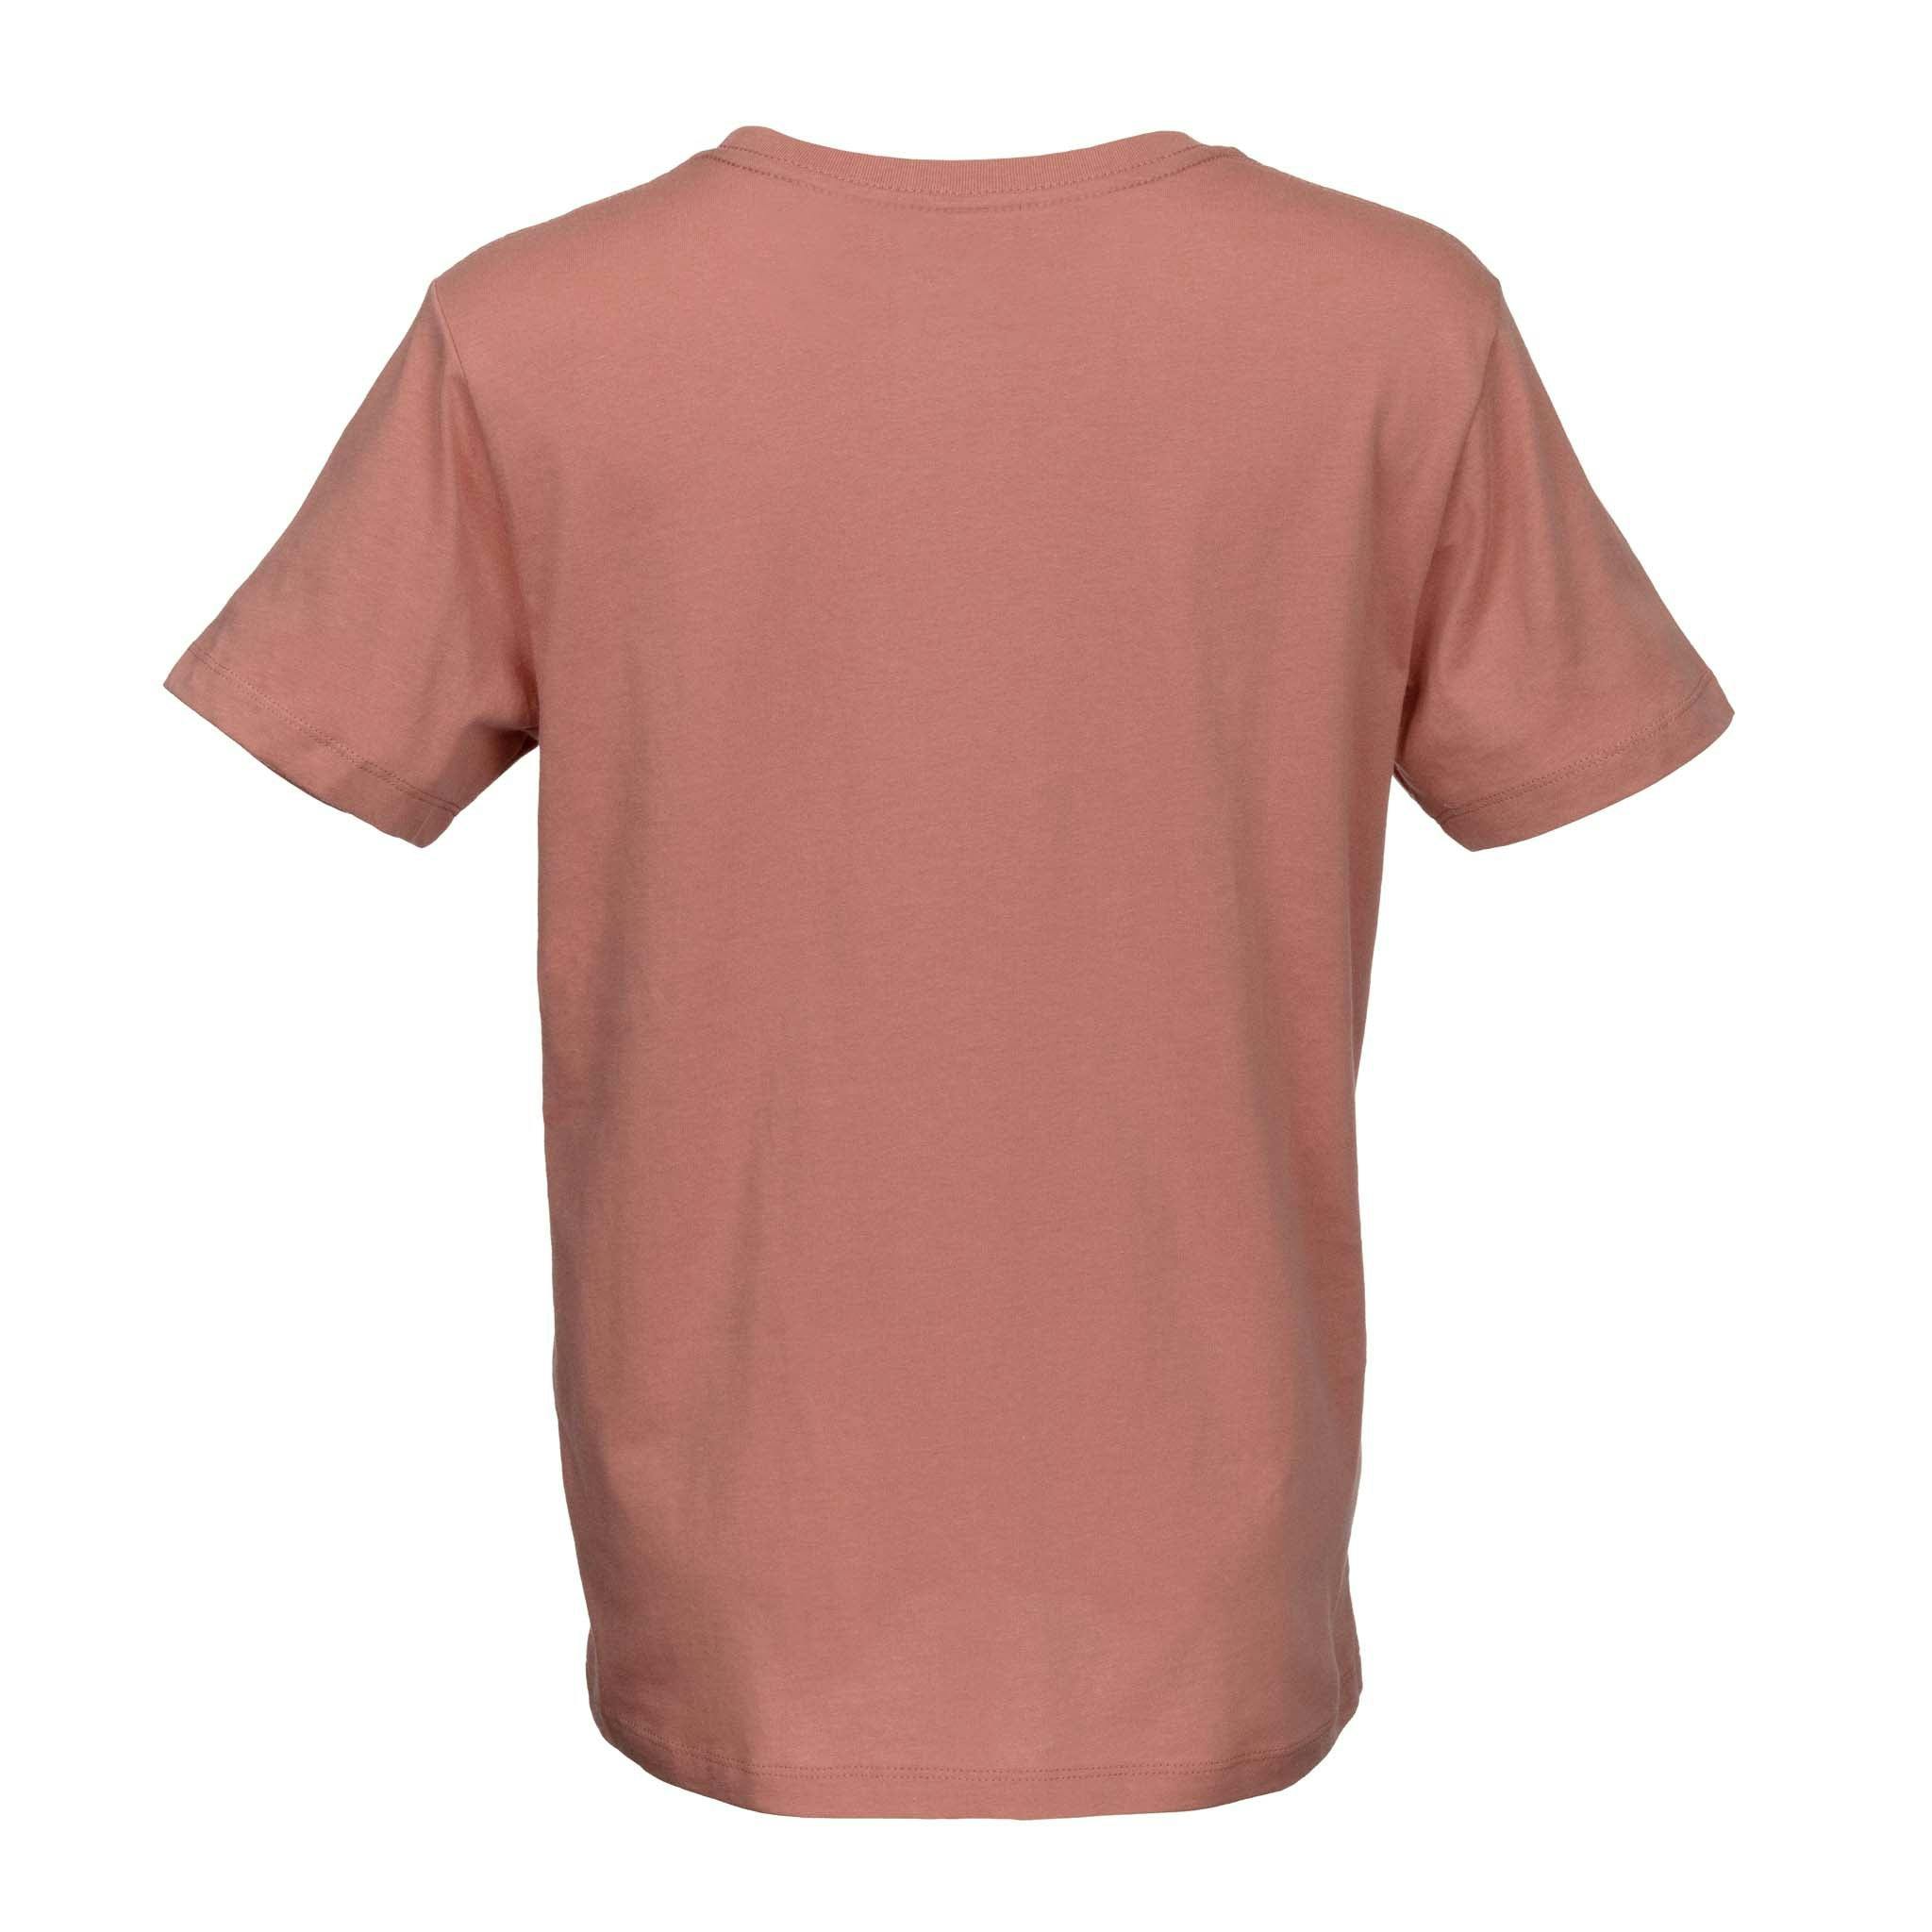 Sierra Nevada Women's Handcrafted Short Sleeve T-Shirt Desert Pink - Back view